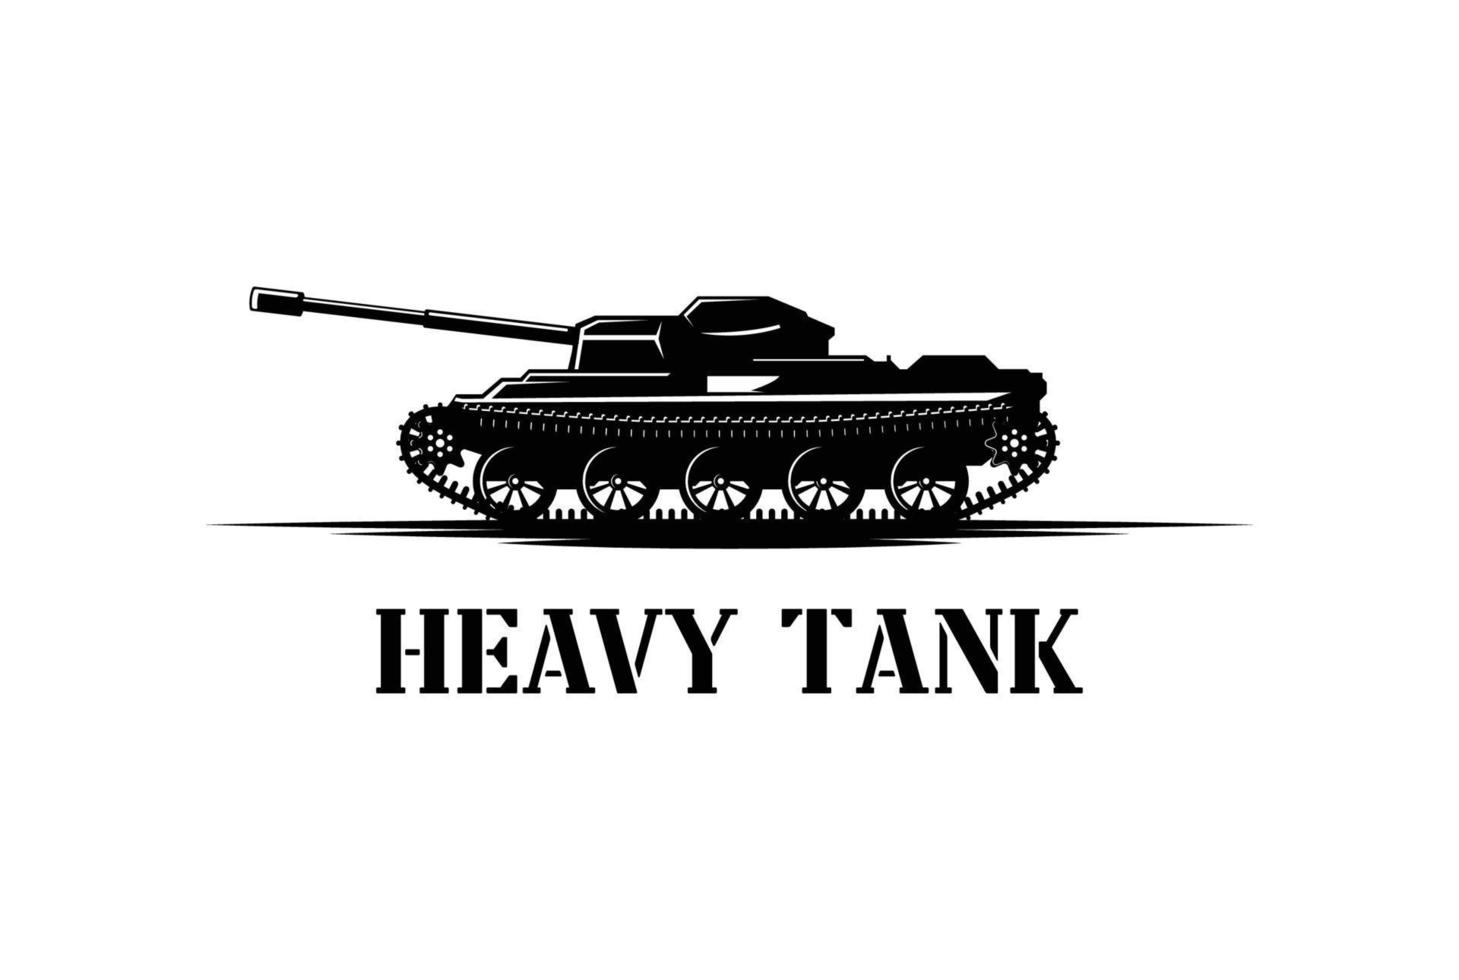 carro tanque pesado retrô vintage para arma guerra defesa exército soldado transporte militar logotipo vetor